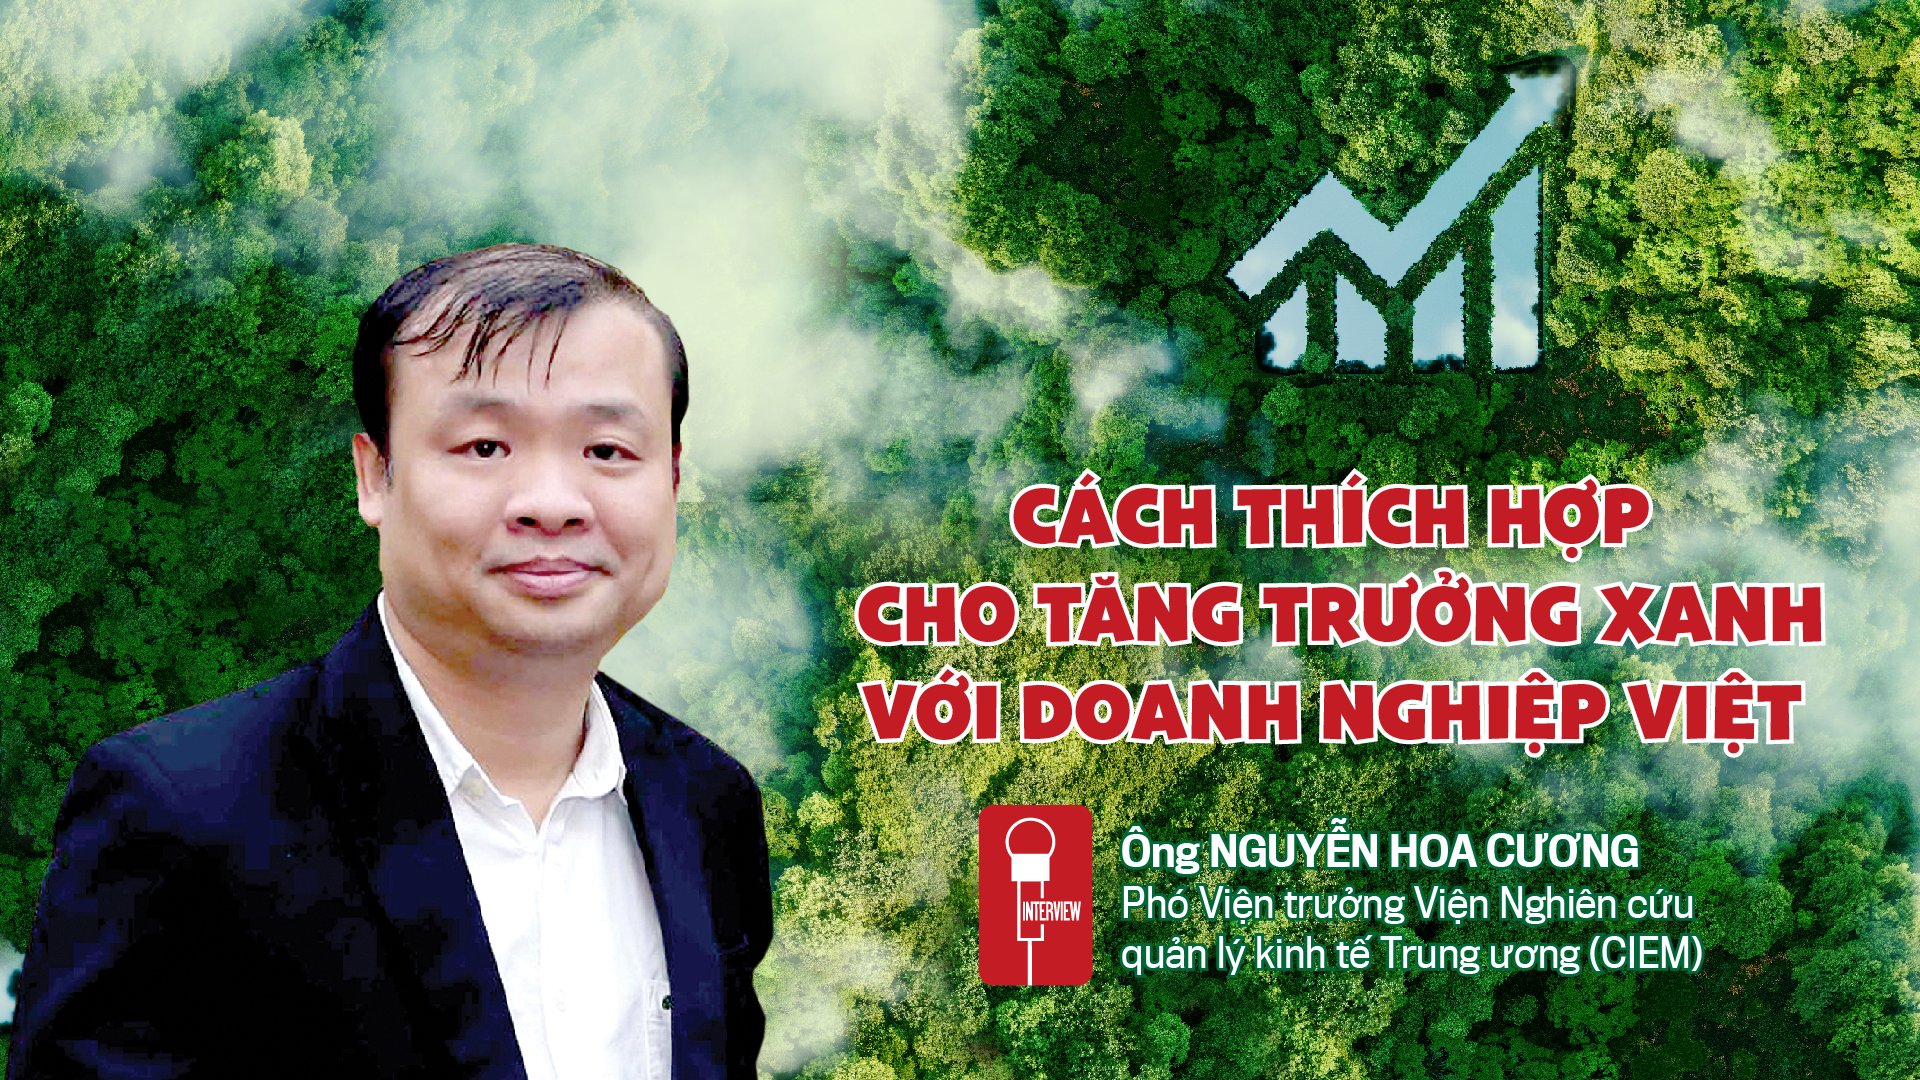 Cách thích hợp cho tăng trưởng xanh với doanh nghiệp Việt  - Ảnh 1